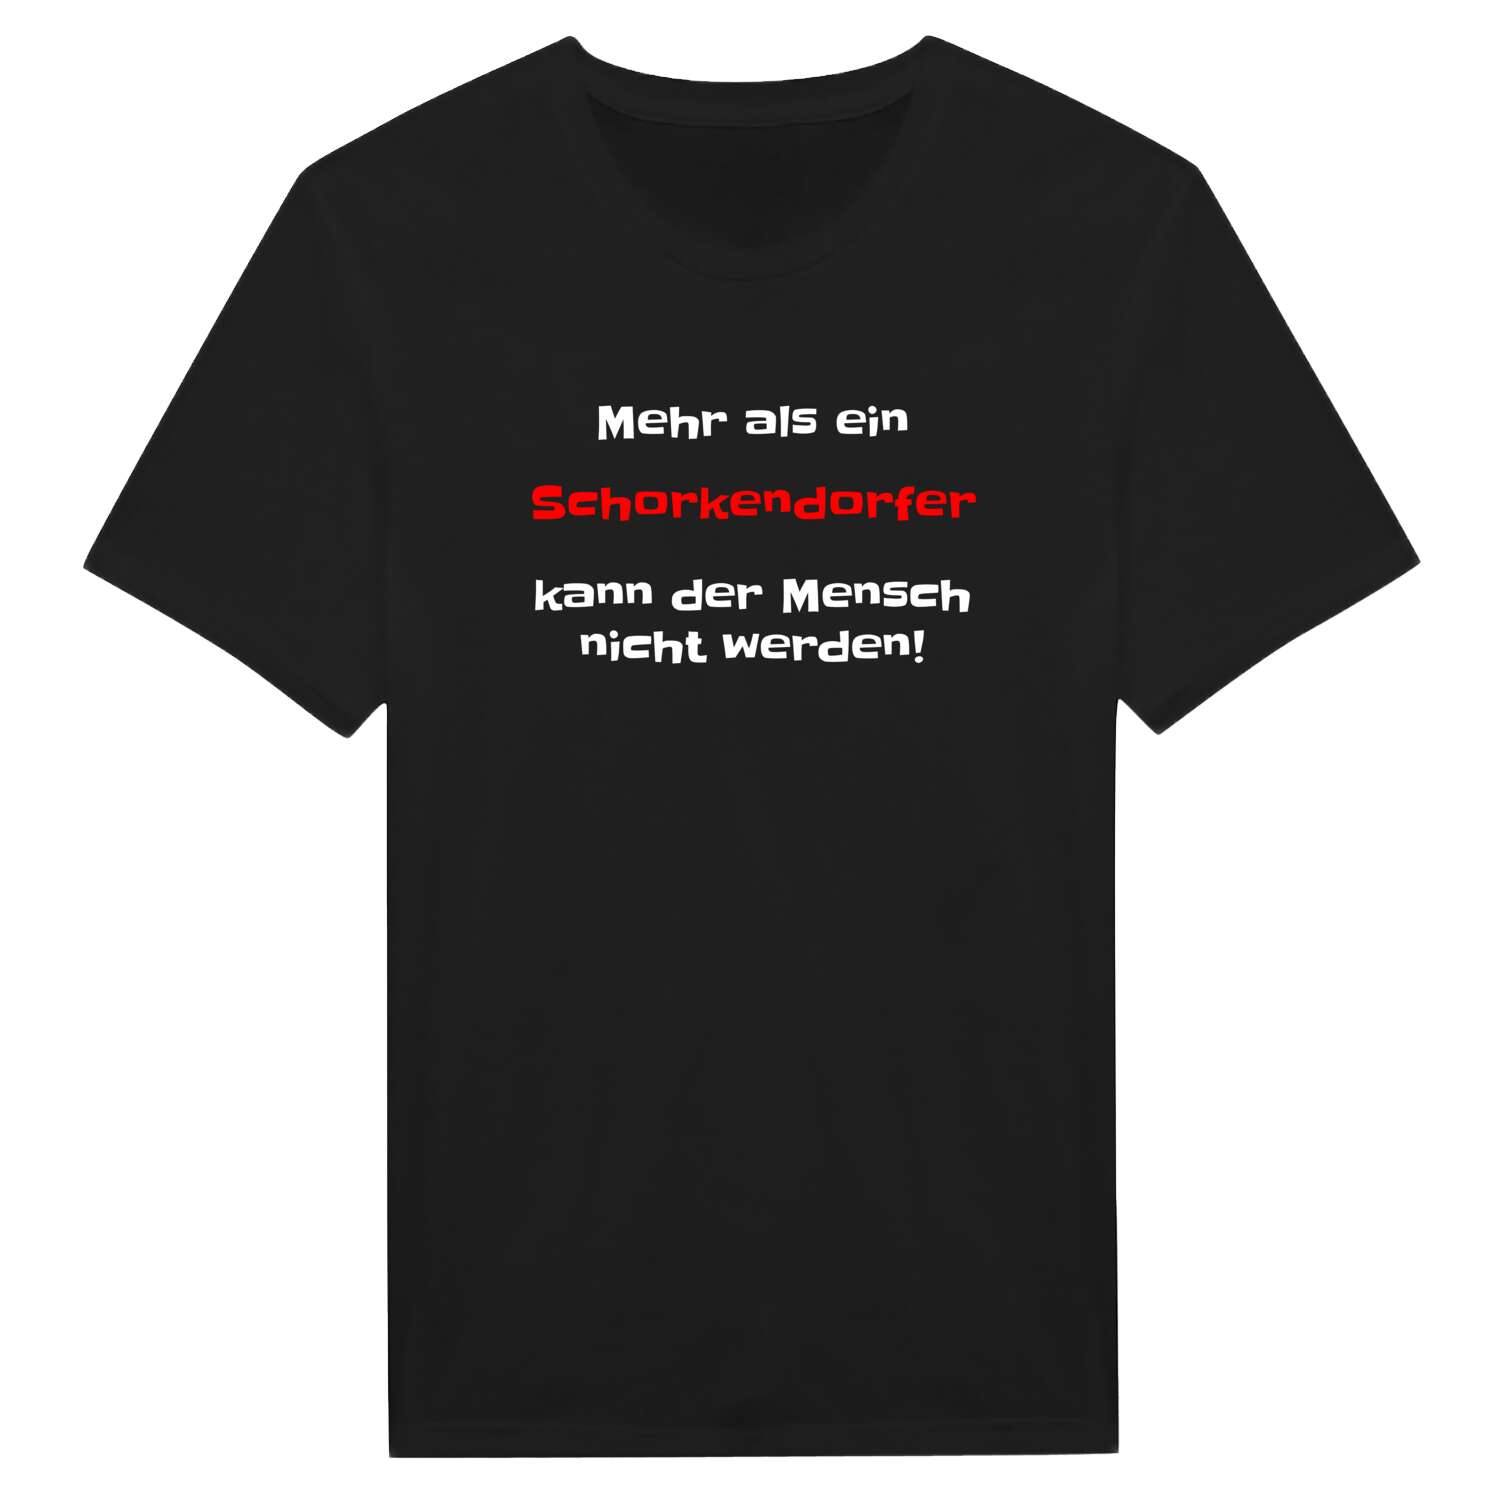 Schorkendorf T-Shirt »Mehr als ein«